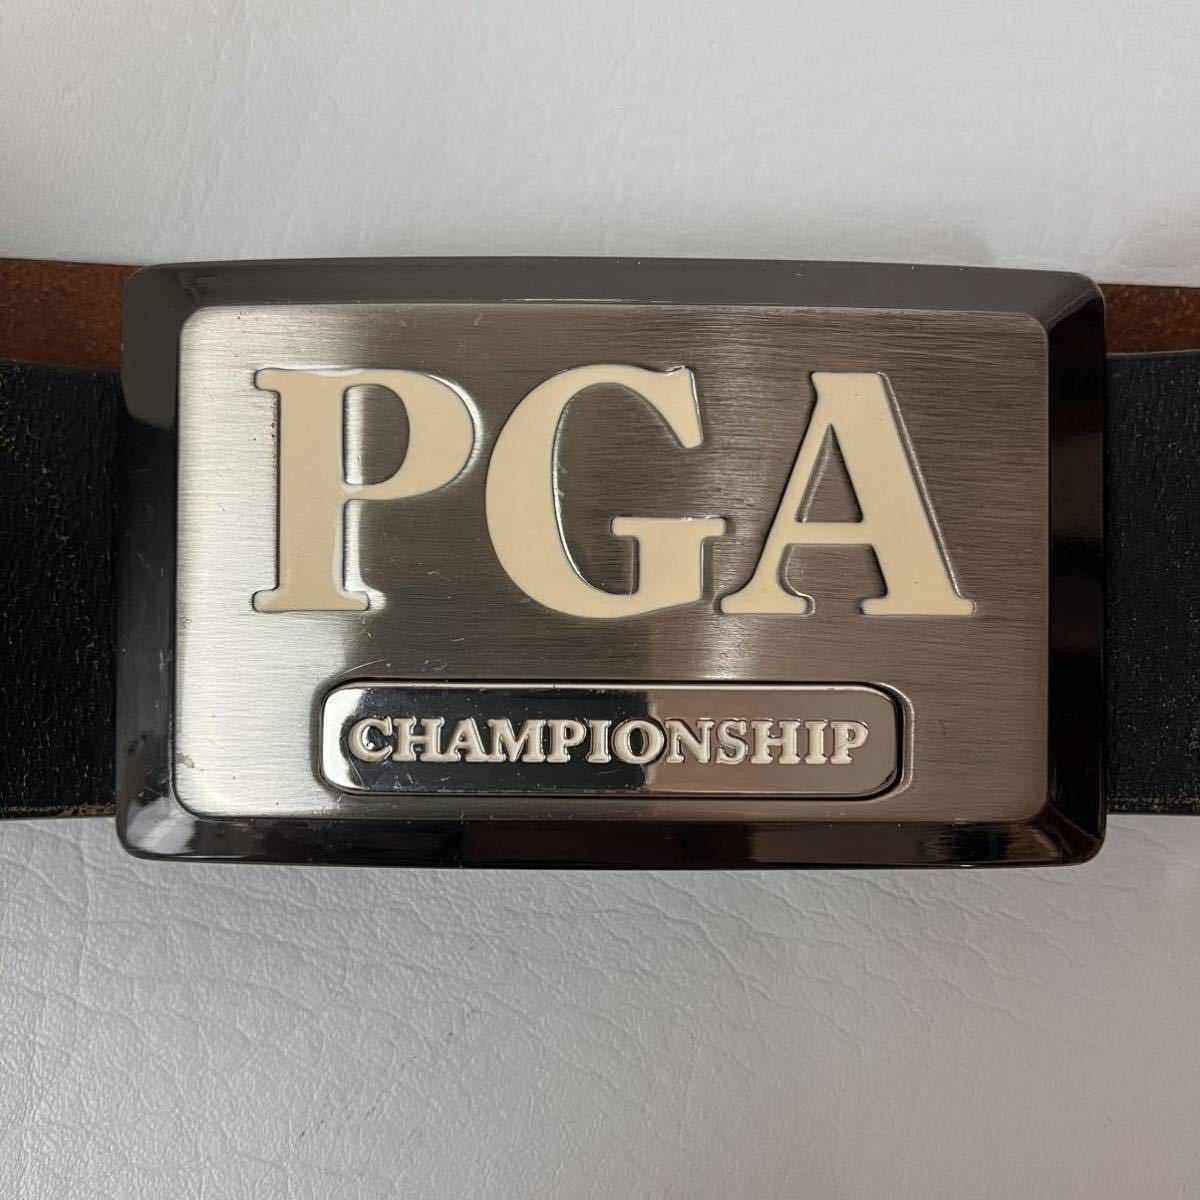 PGA CHAMPIONSHIP メンズ ベルト 黒 ブラック プロゴルフ協会 golf カジュアル スポーツ ウェア